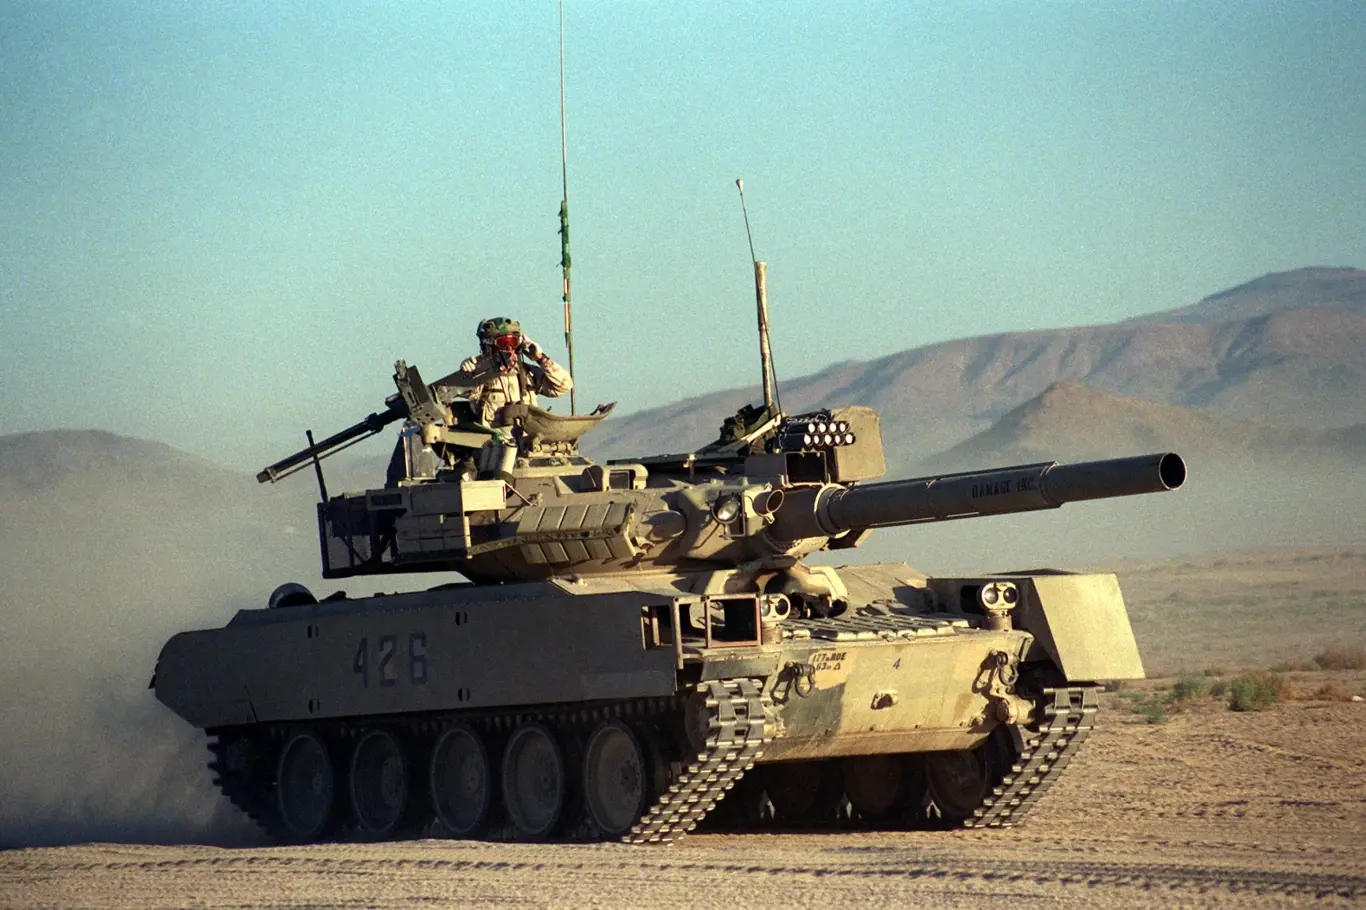 Sheridan vizuálně upravený do podoby tanku T-80.